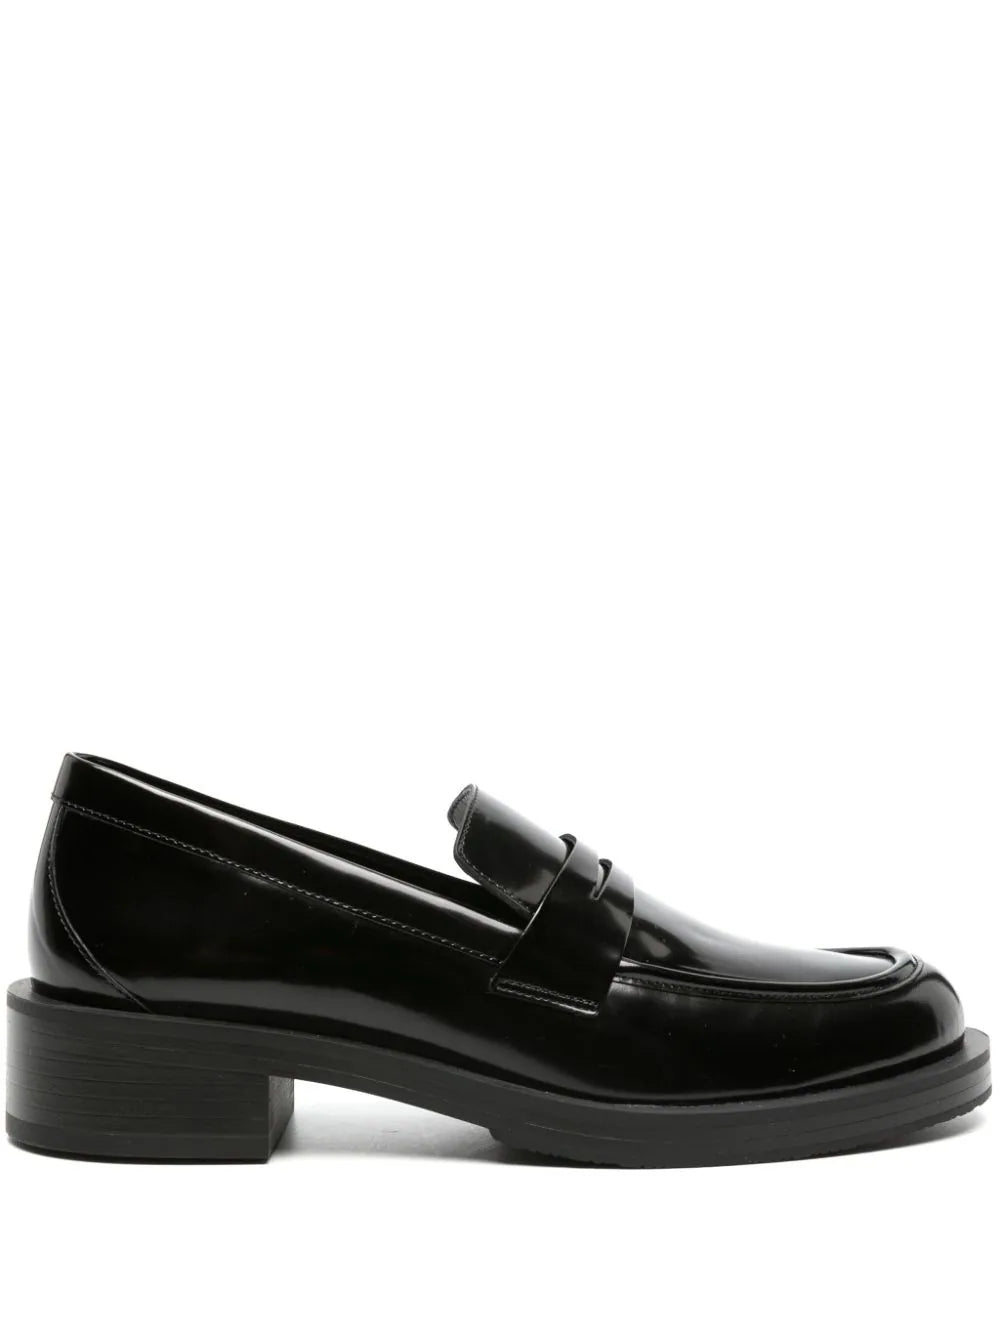 Stuart Weitzman SG649 Woman Black Flat shoes - Zuklat